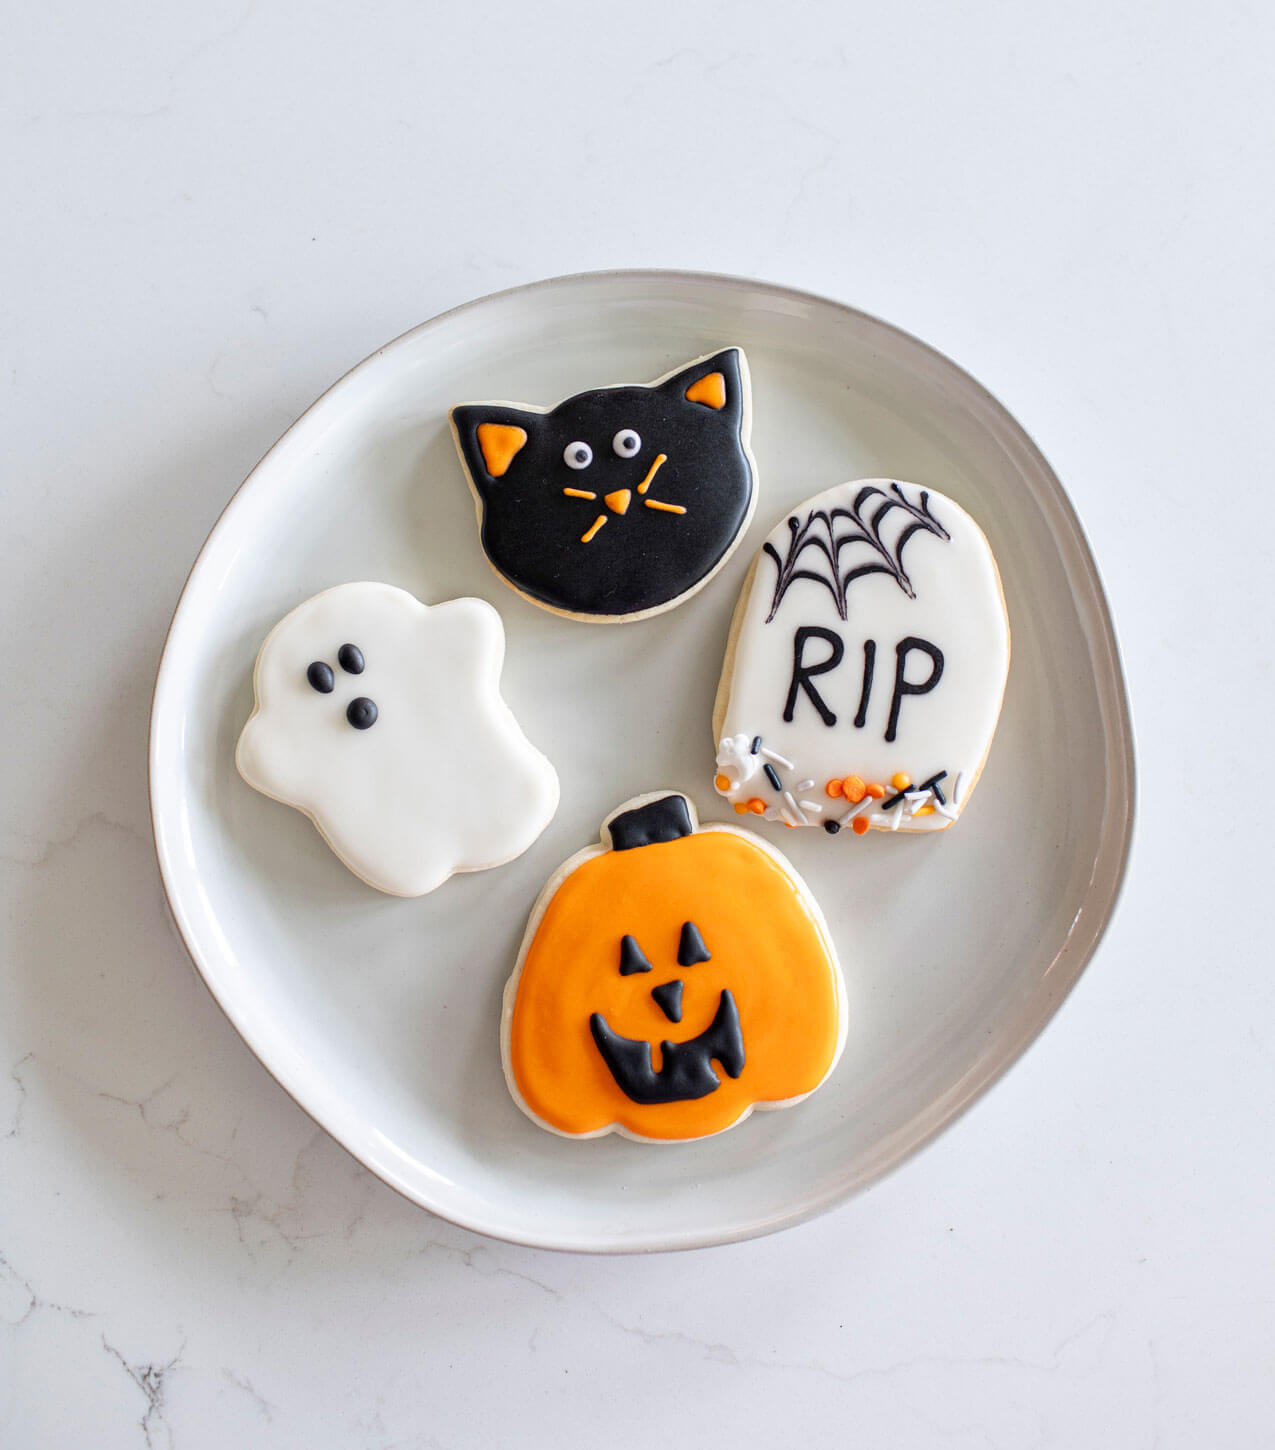 Halloween Cookie Kit